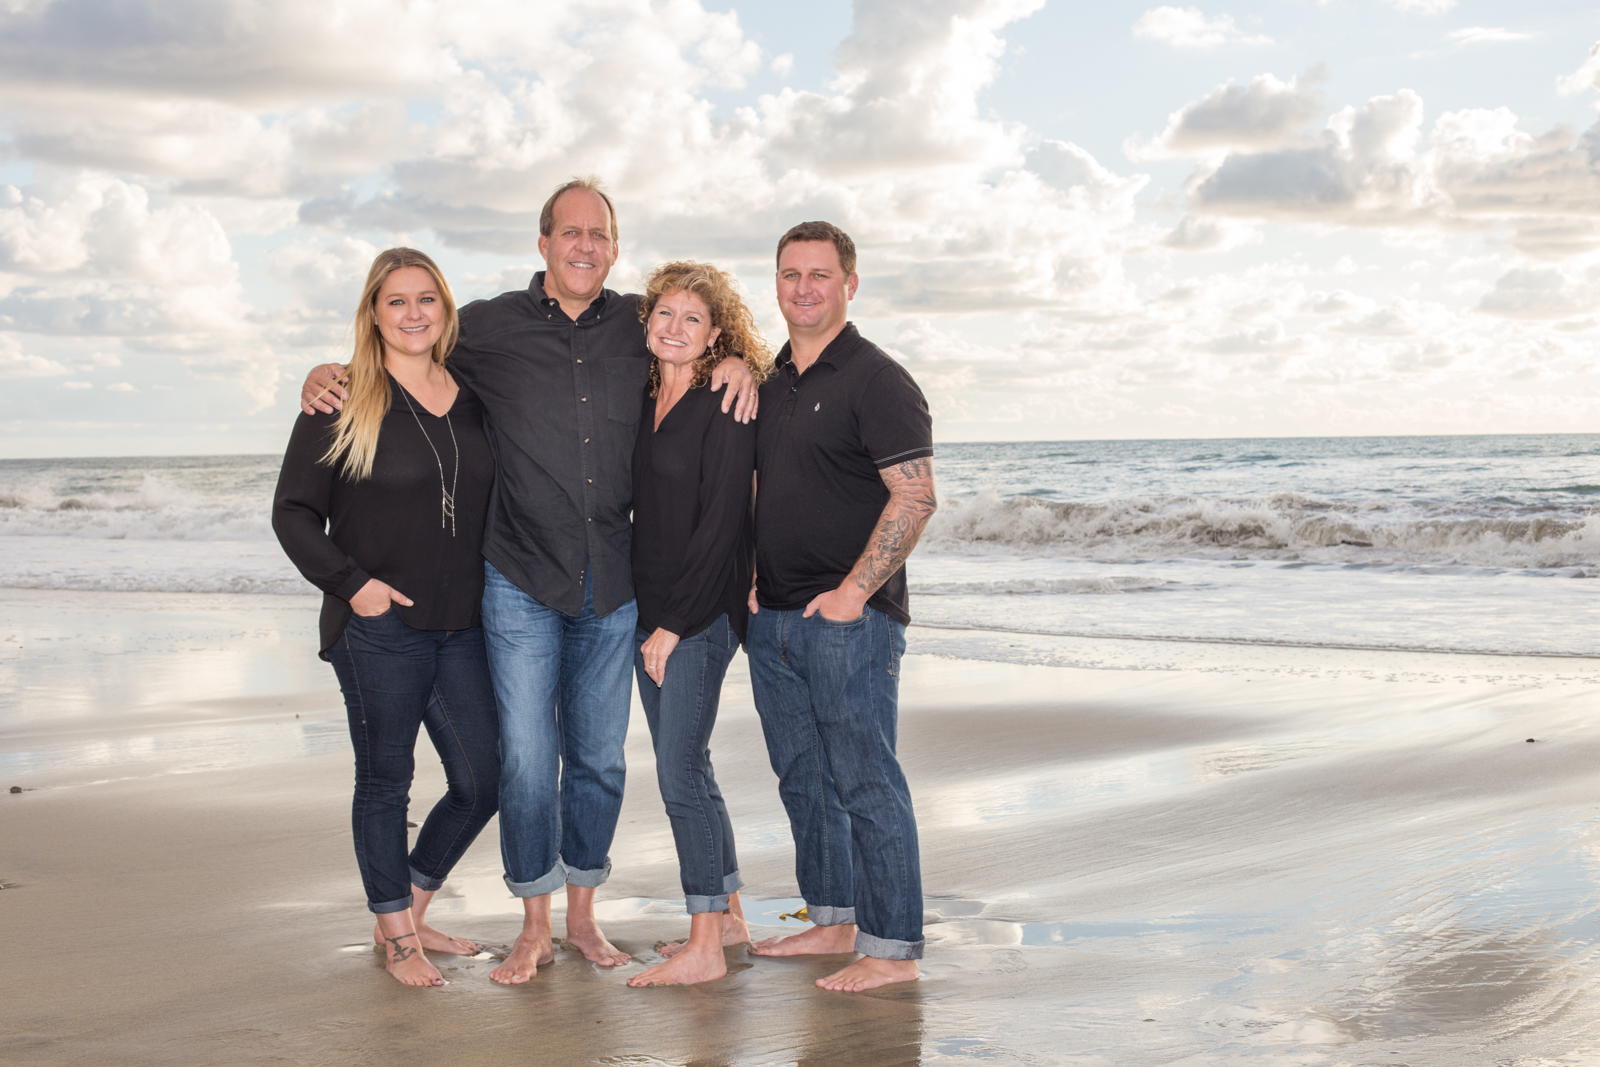 Oceanside Family photo shoot